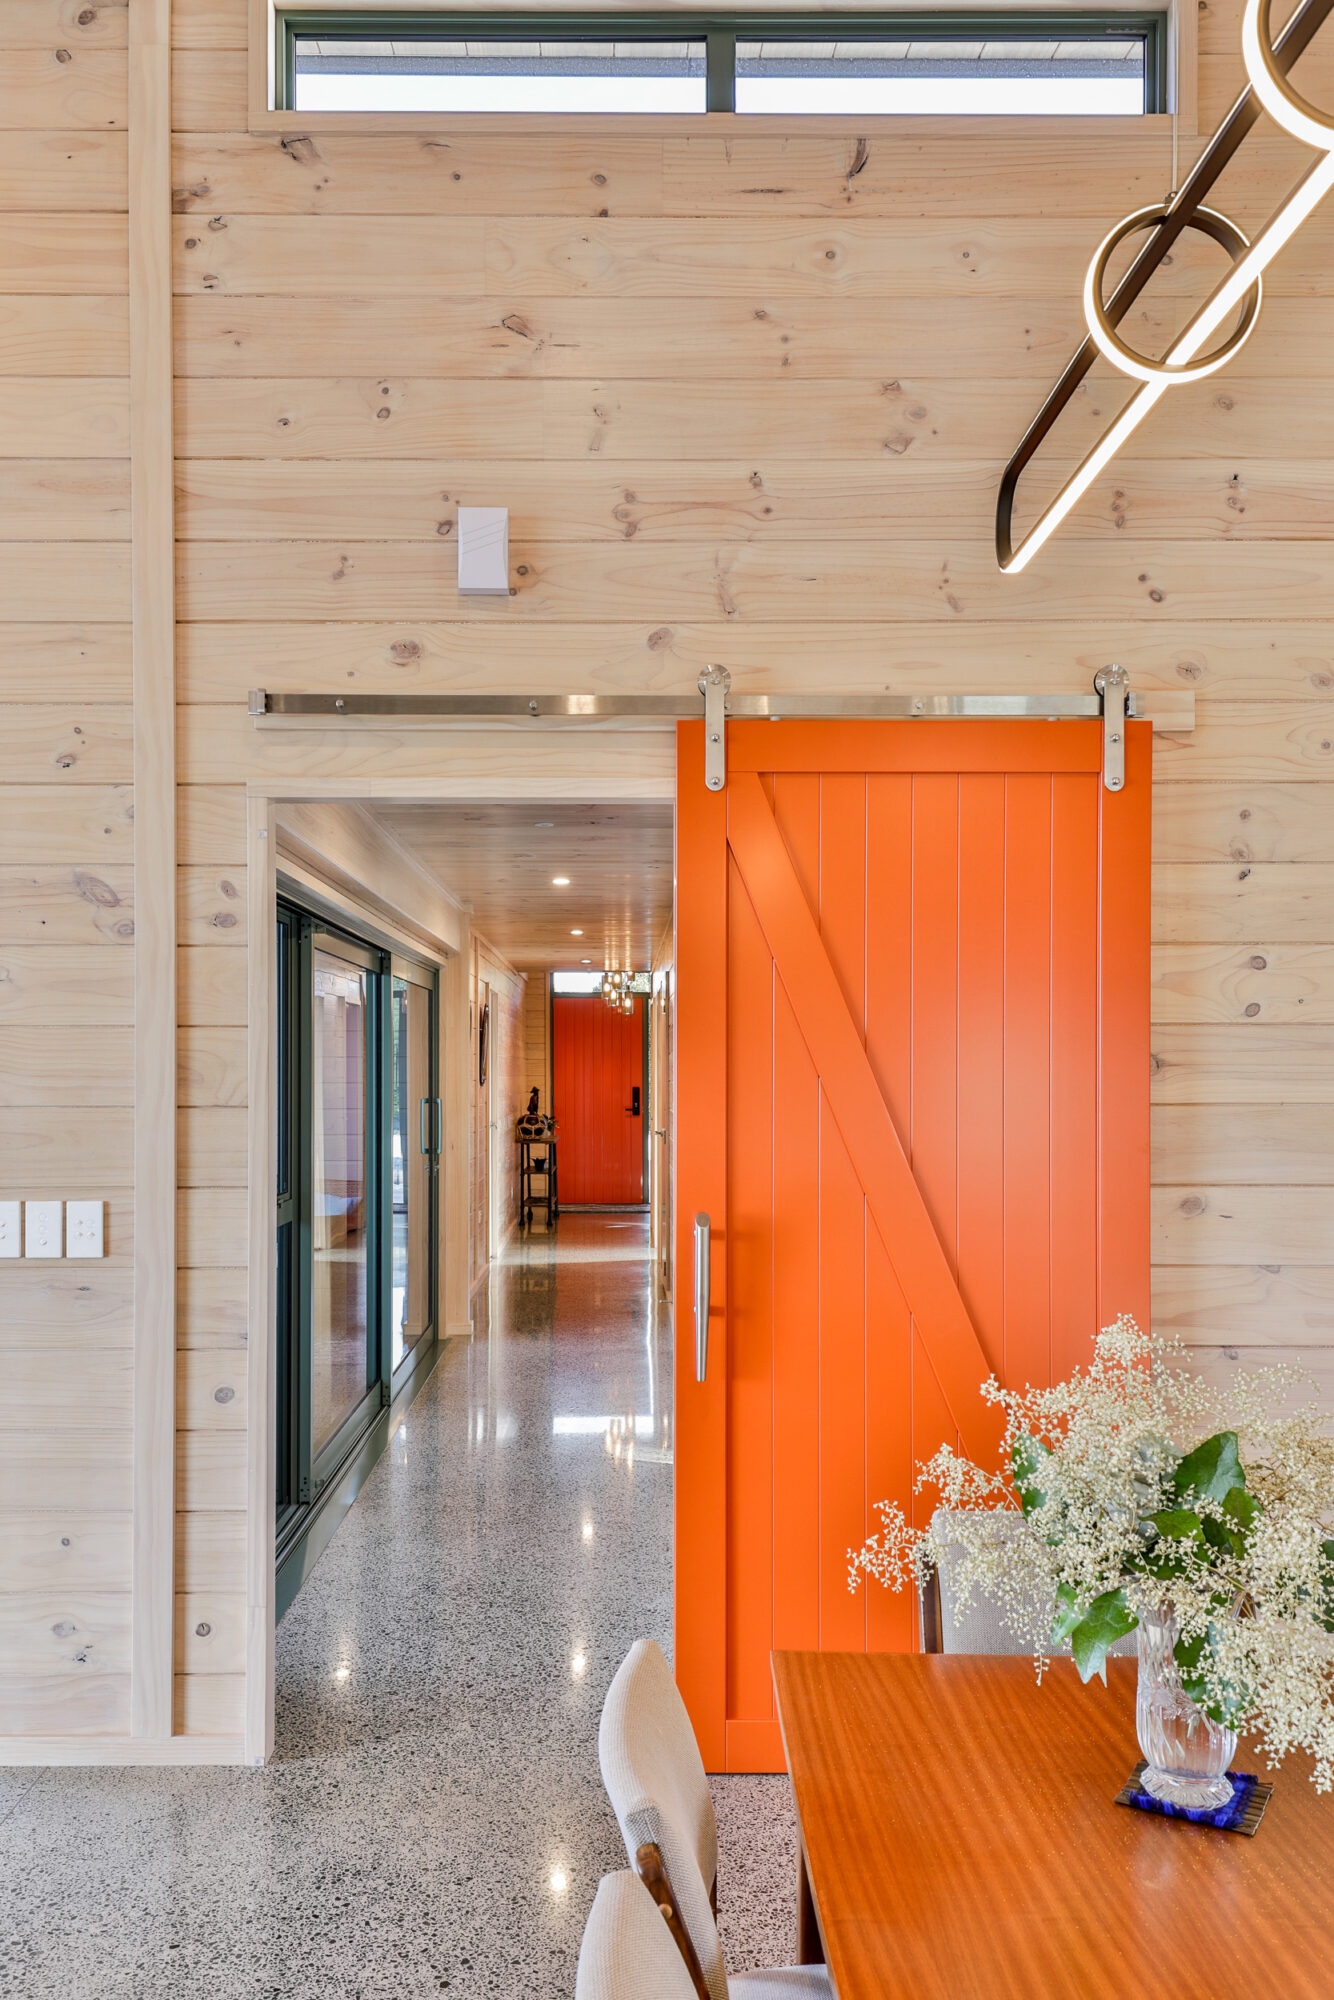 The orange barn door